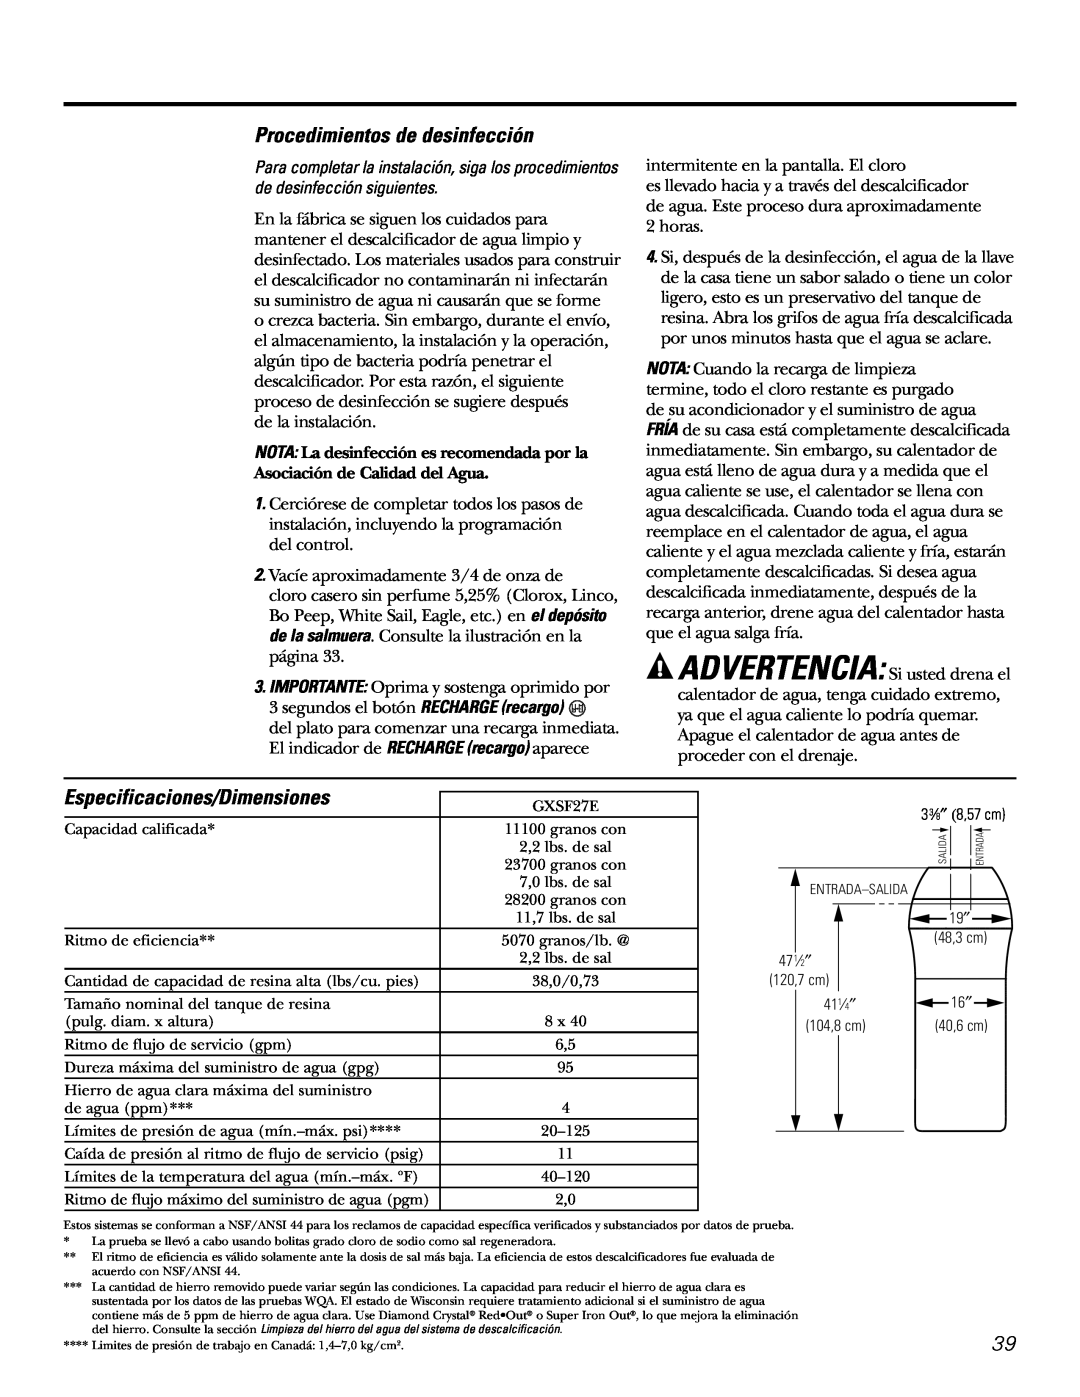 GE GXSF27E manual Procedimientos de desinfección, Especificaciones/Dimensiones 